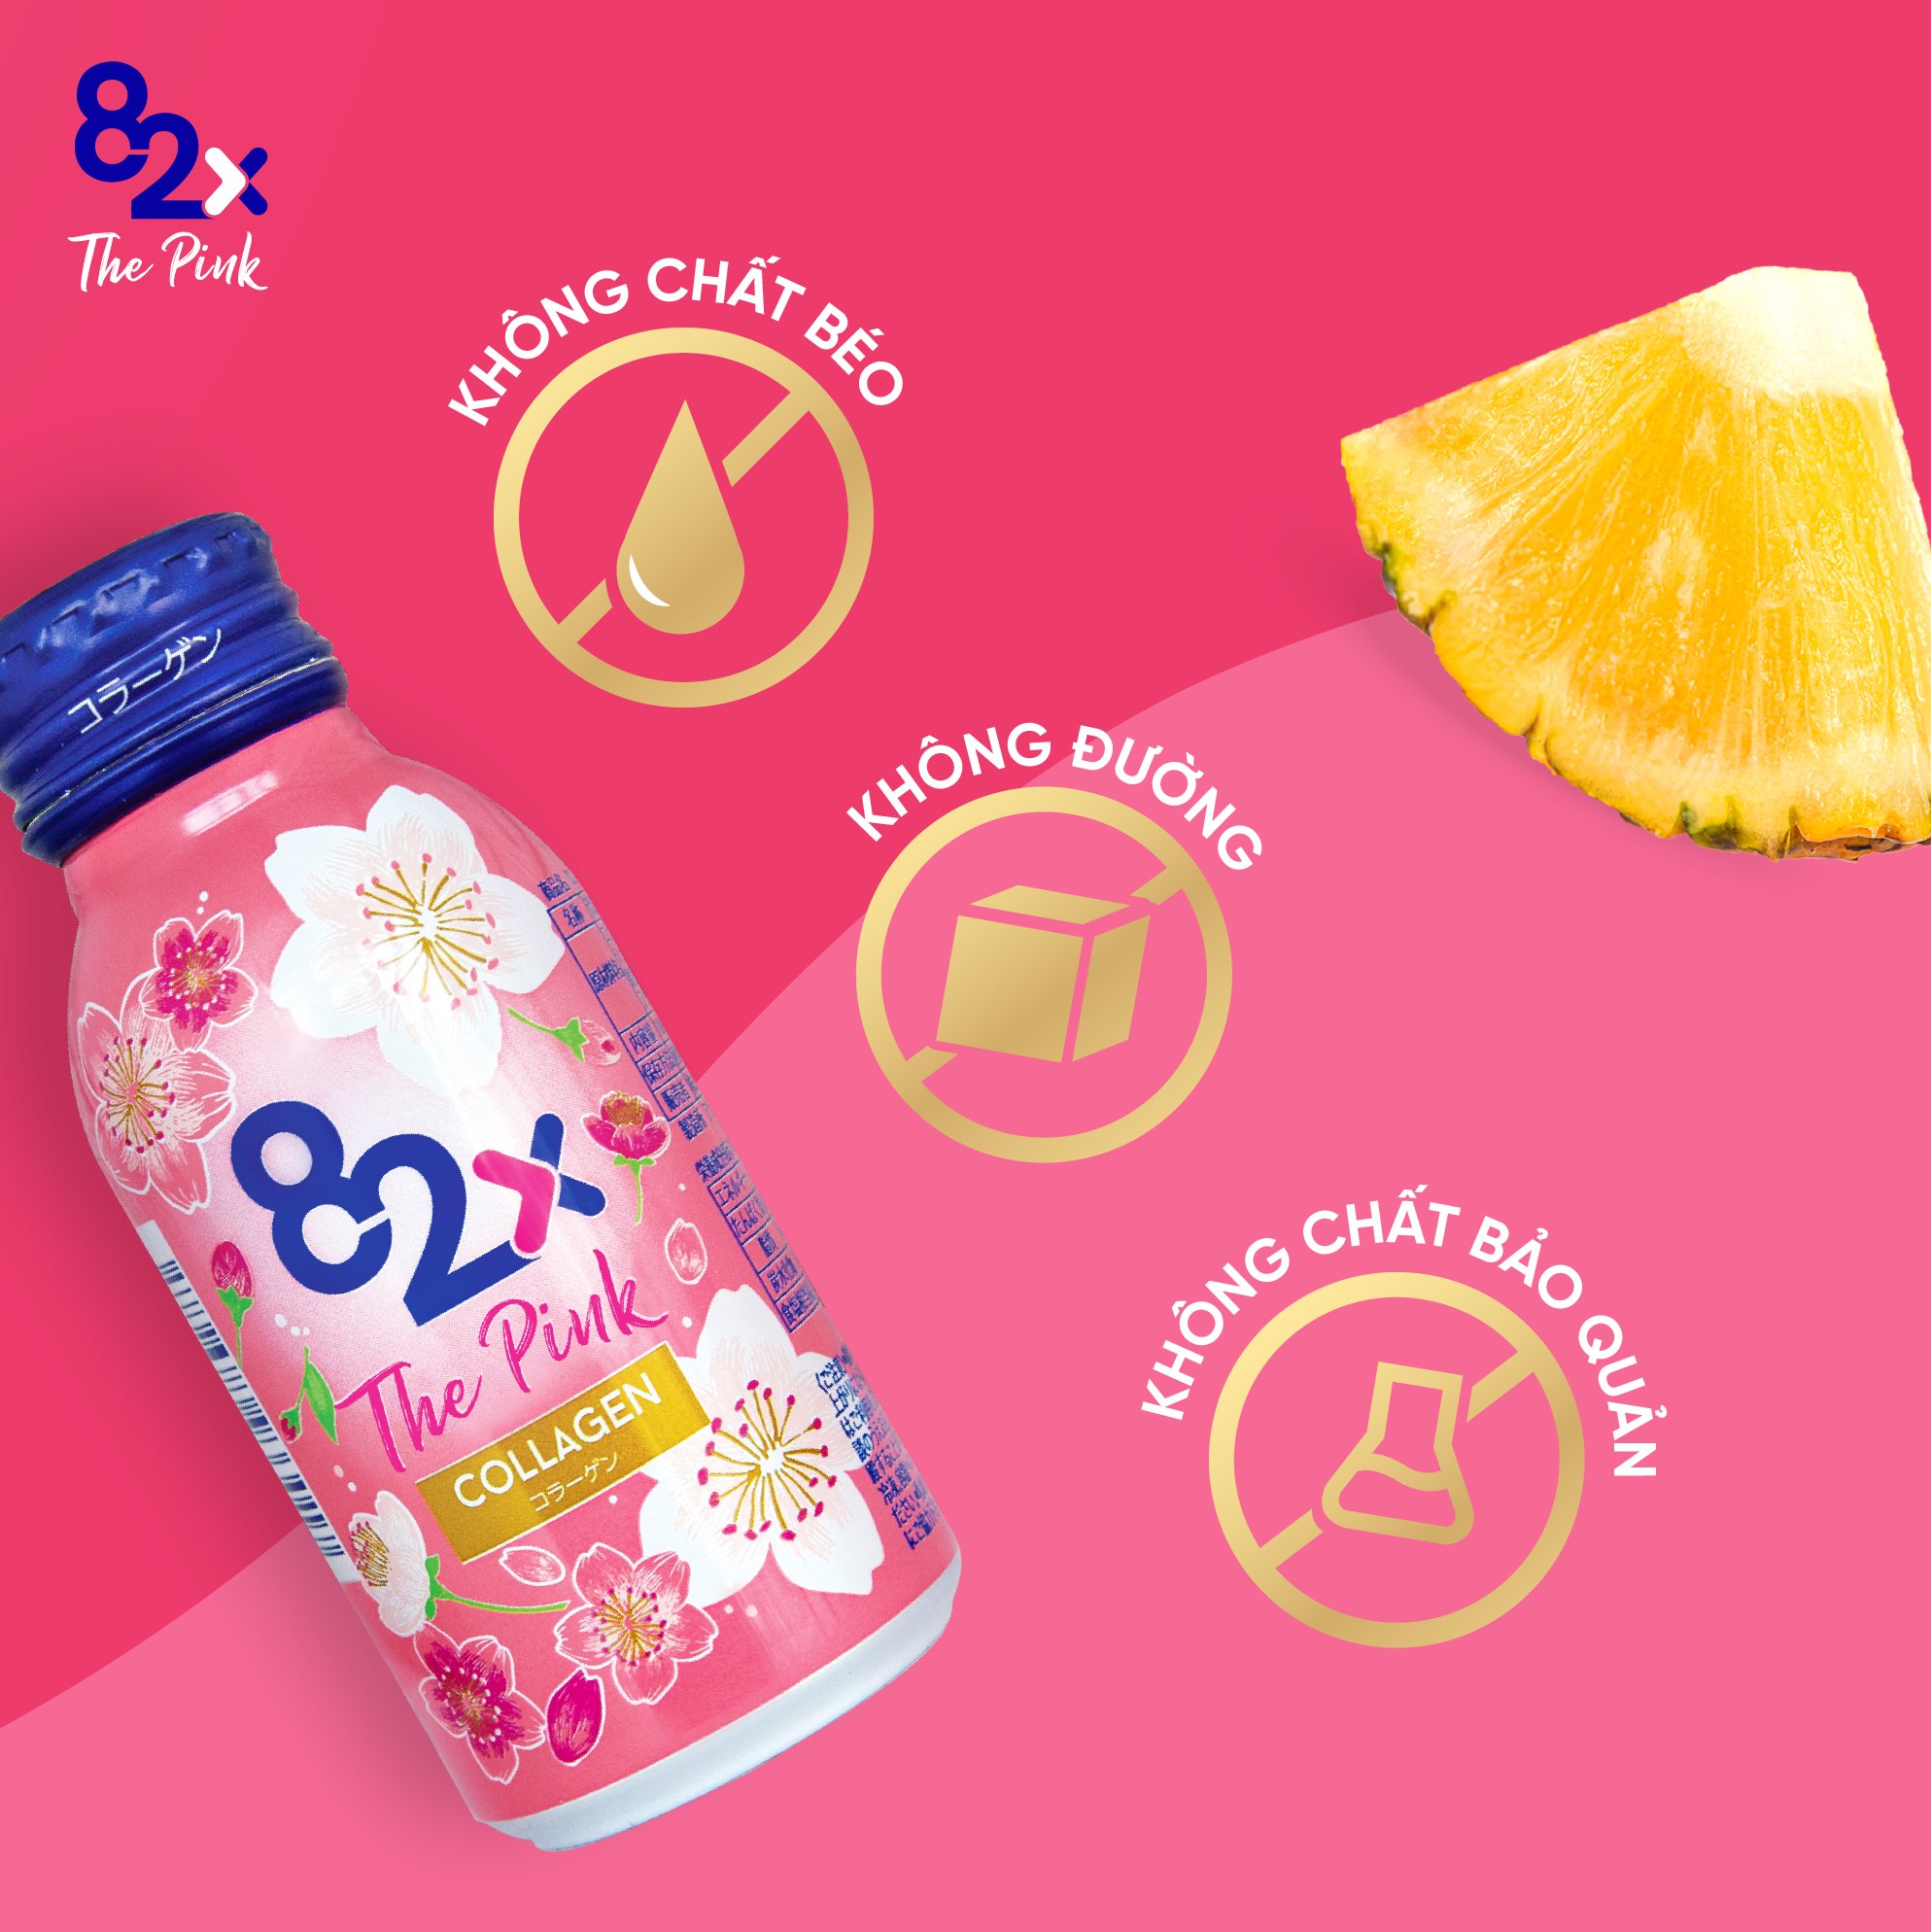 Nước uống Collagen Mashiro 82x The Pink (Hộp 10 chai x 100ml)